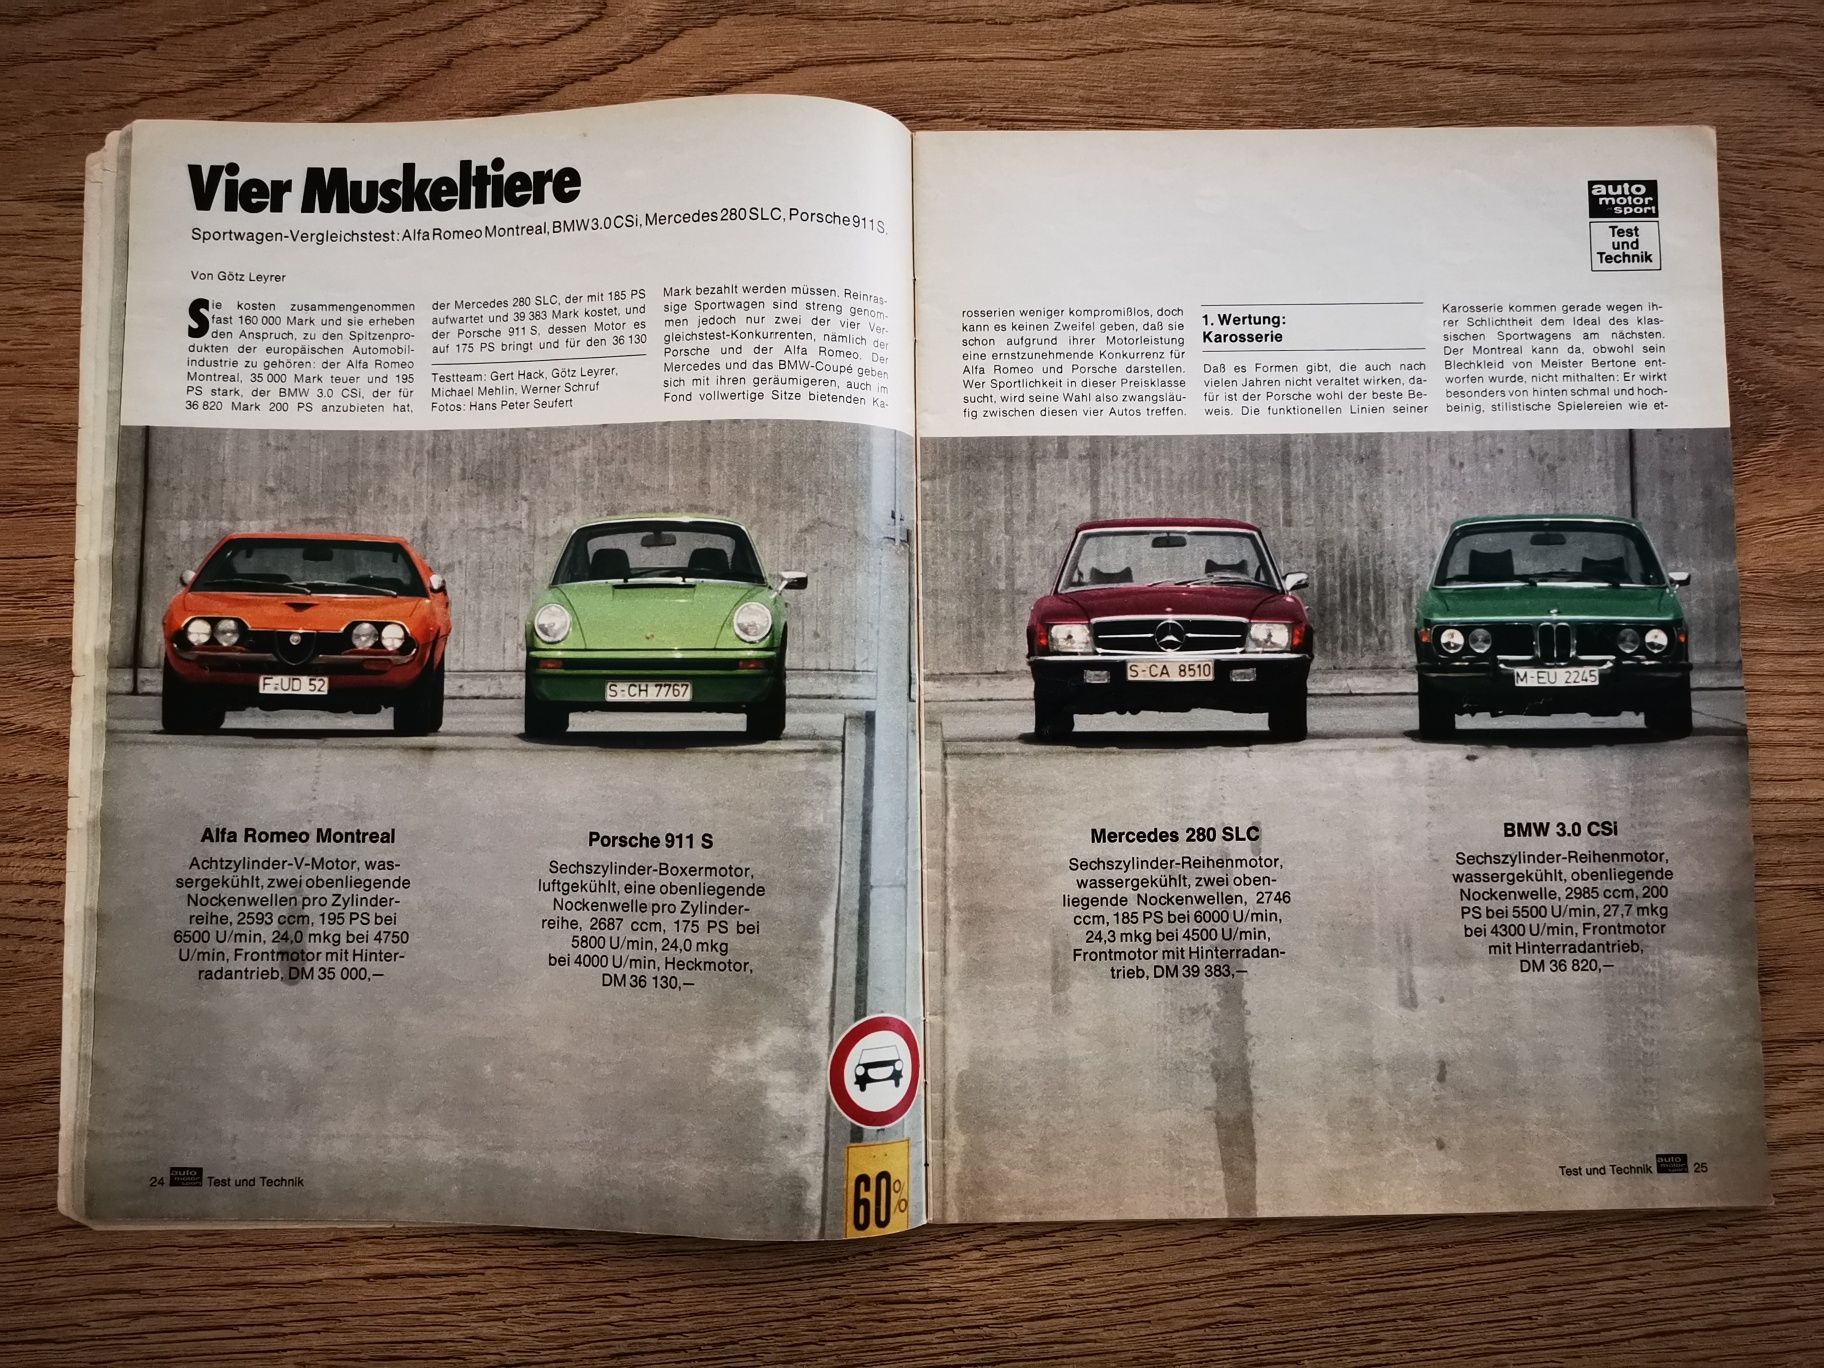 Czasopismo Auto Motor und Sport z czerwca 1975 roku (j. niemiecki)